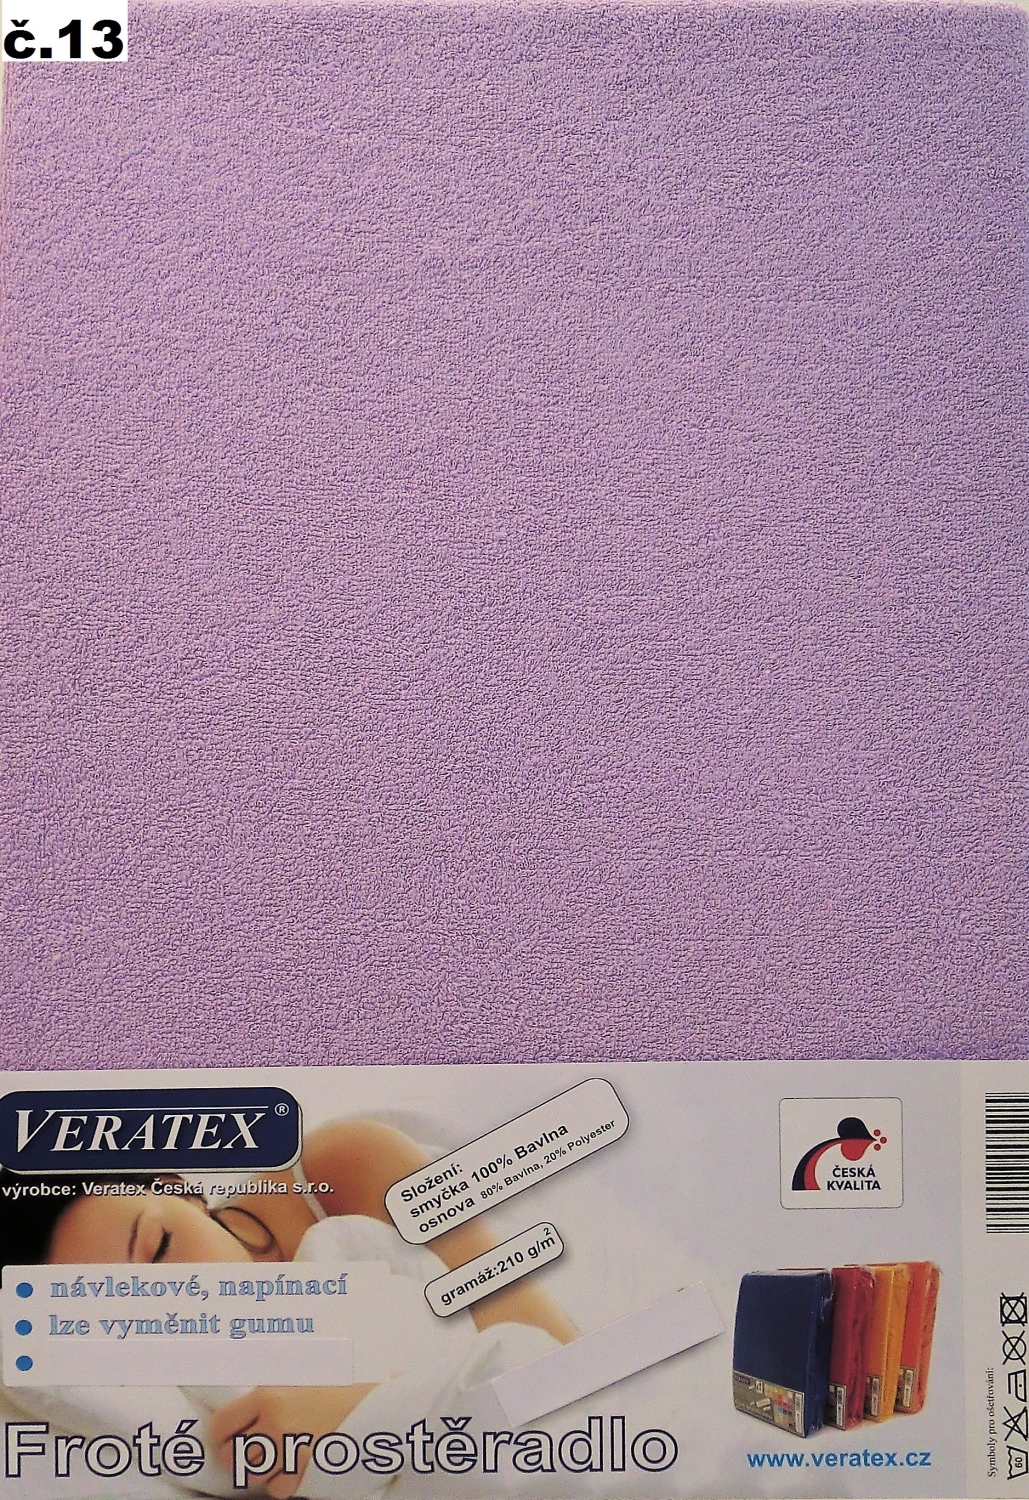 Veratex Froté prostěradlo 160x220/16 cm (č.13-fialková) 160 x 220 cm